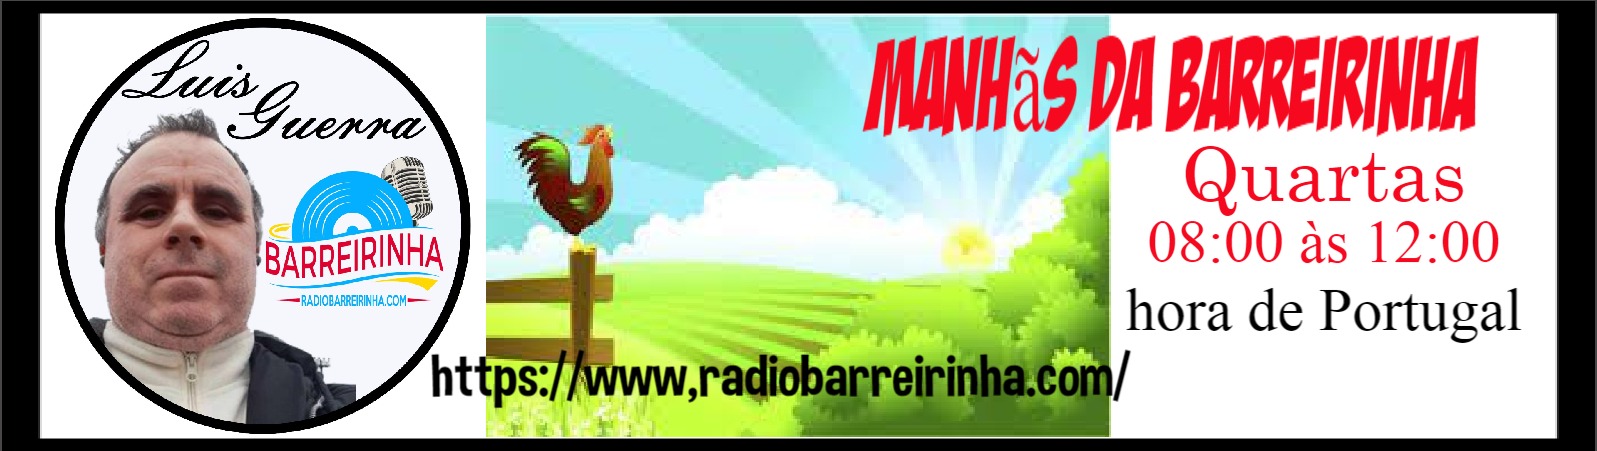 MANHAS DA RADIO